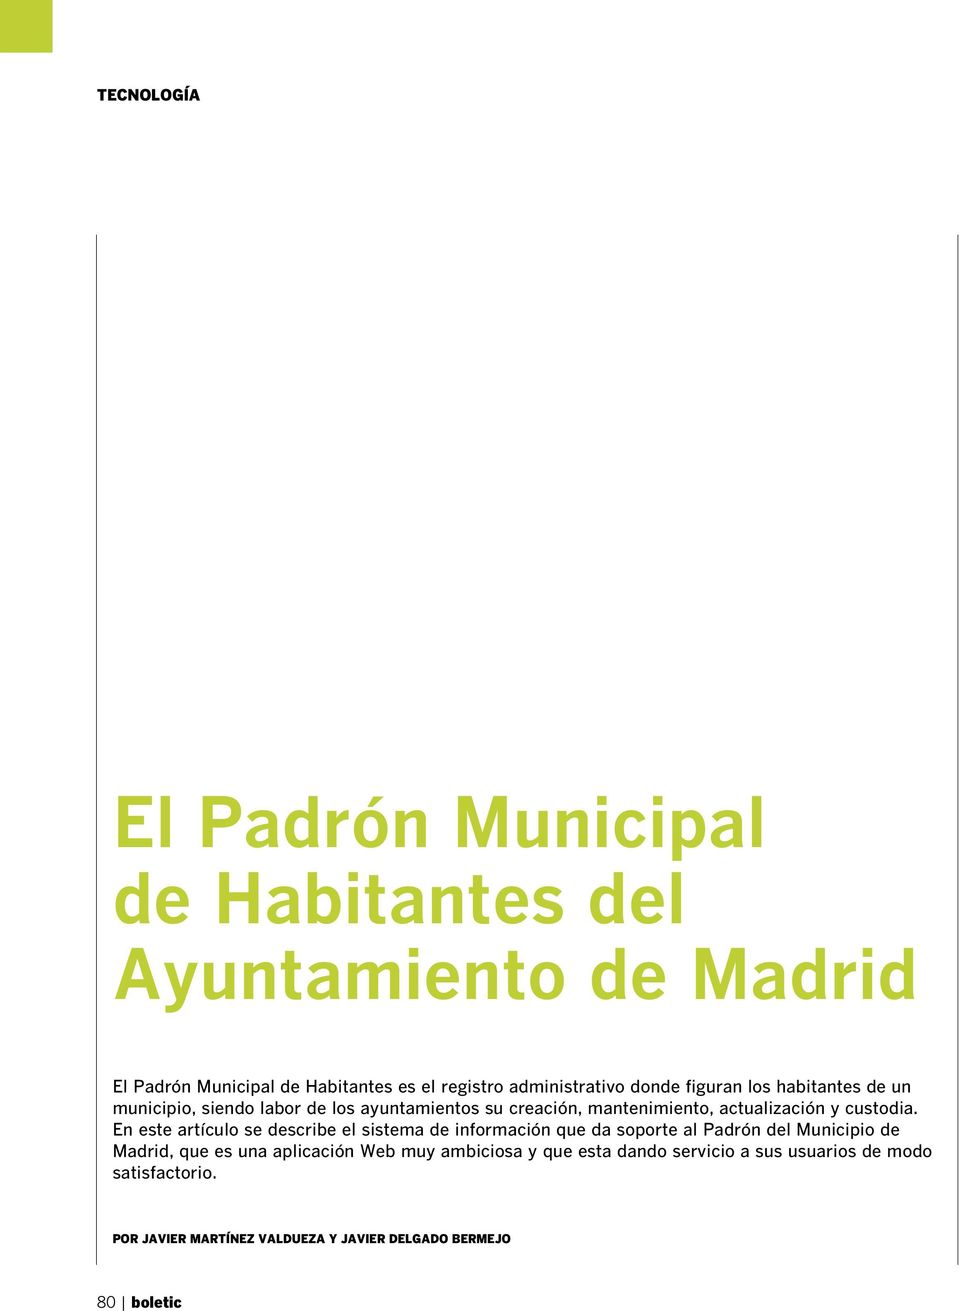 En este artículo se describe el sistema de información que da soporte al Padrón del Municipio de Madrid, que es una aplicación